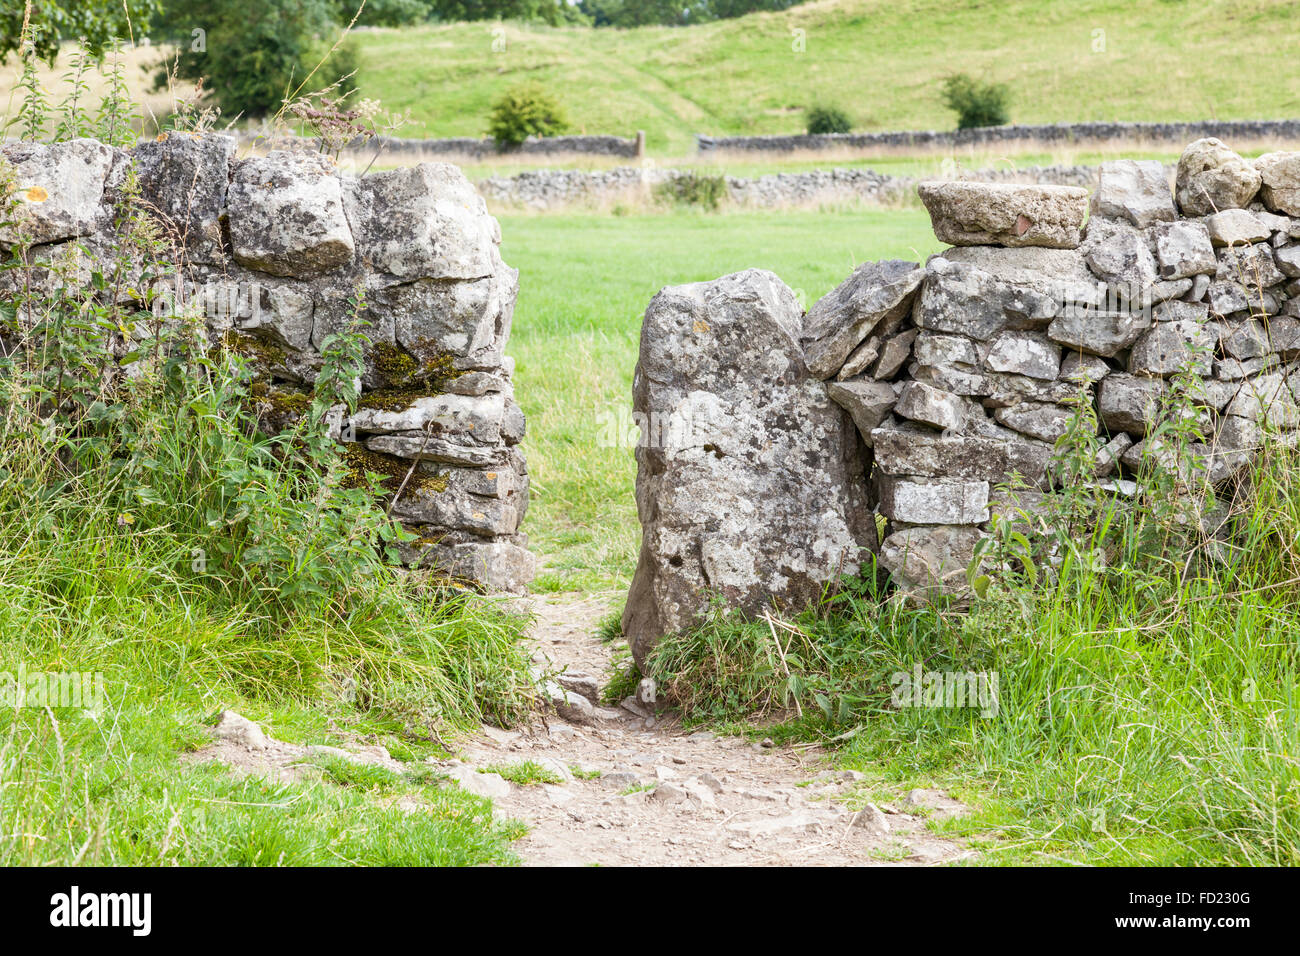 Squeeze stile o stile spremitore, in un secco muro di pietra, Lathkill Dale, Derbyshire, Peak District, England, Regno Unito Foto Stock